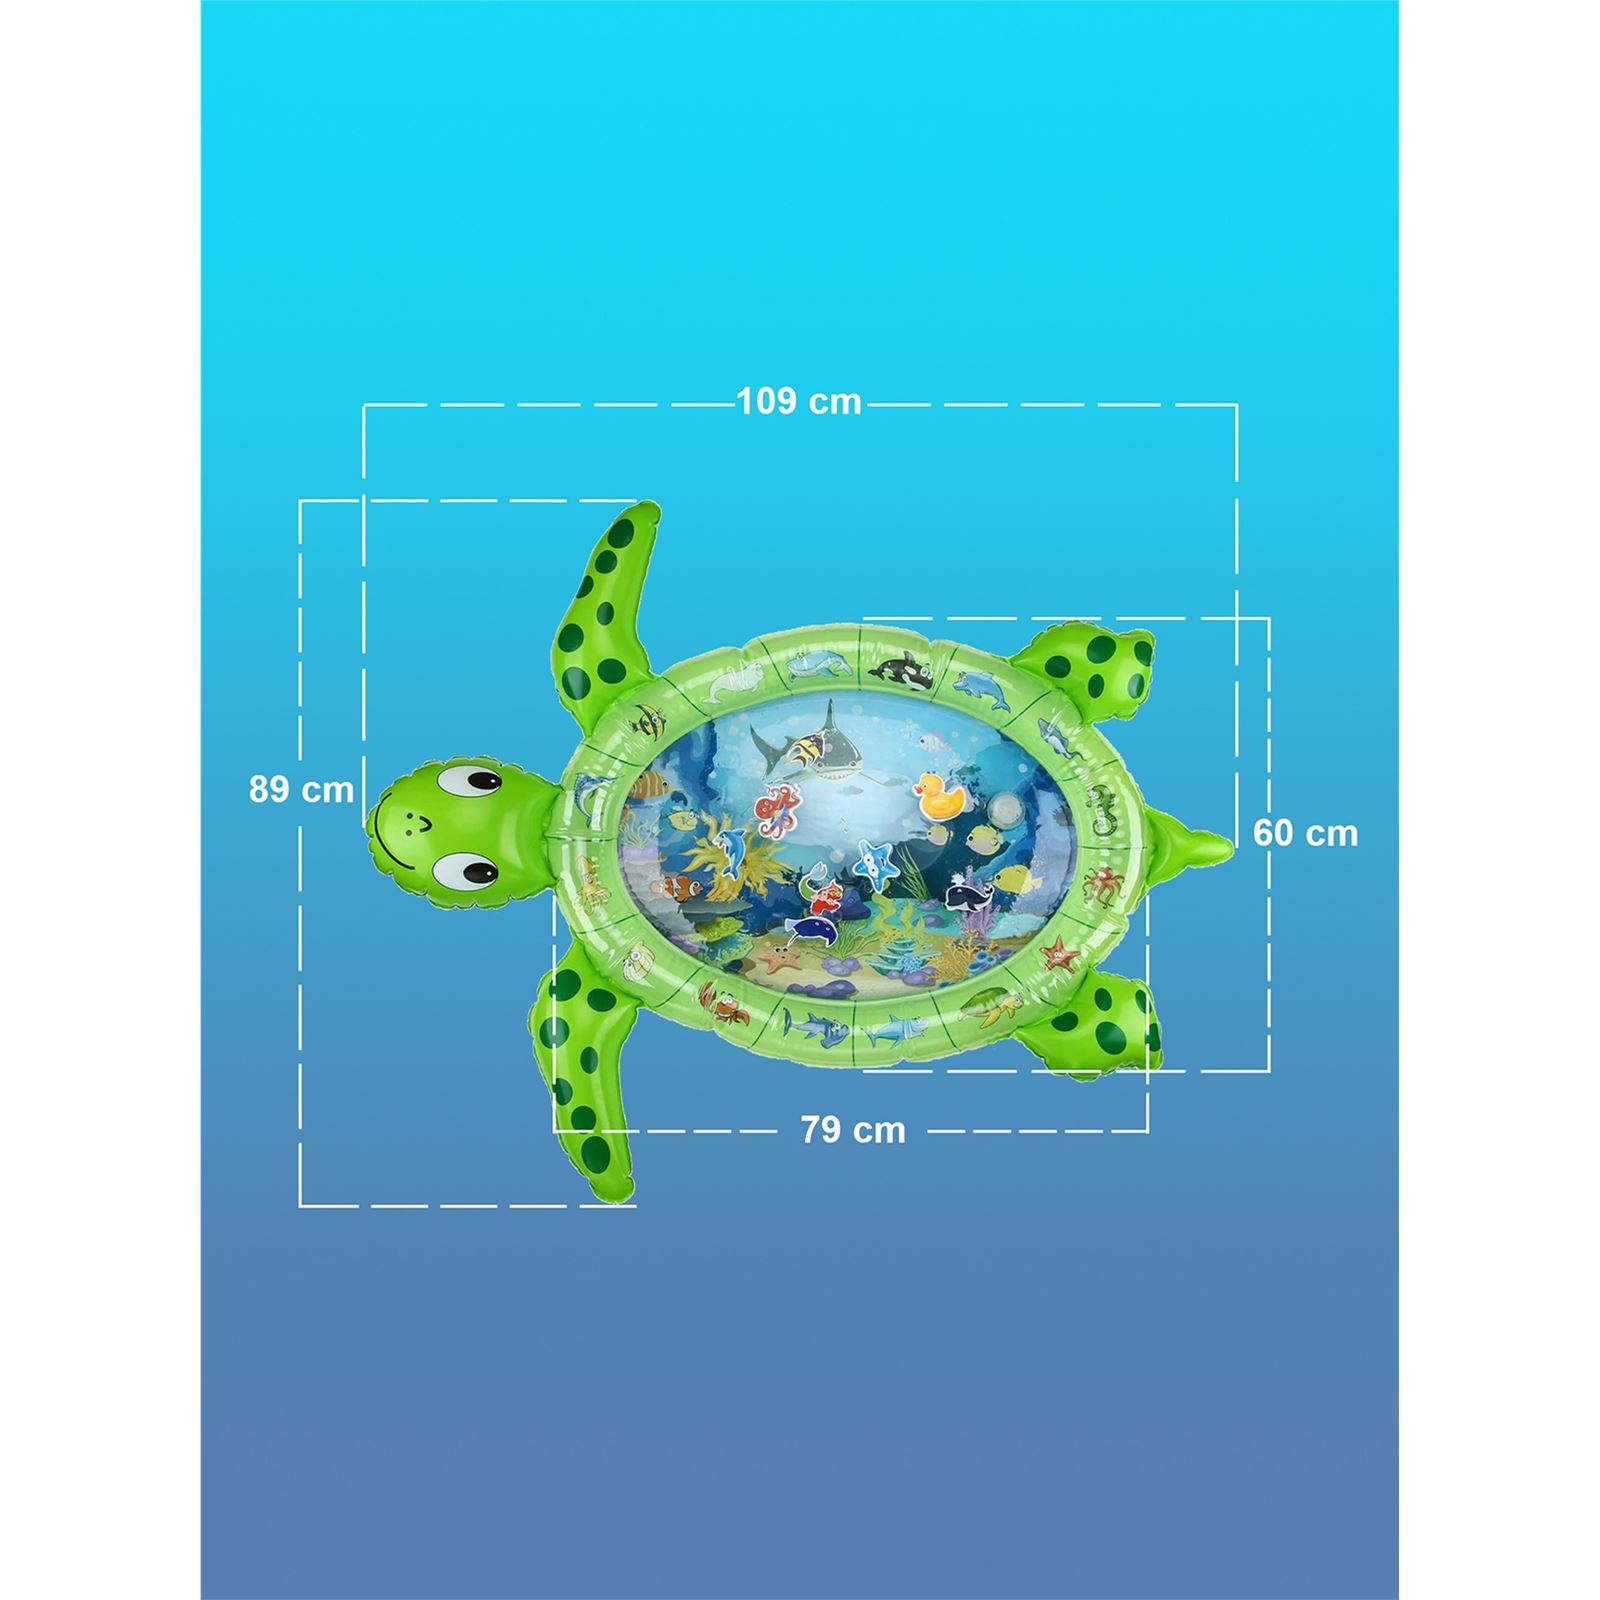 Elfobaby Turtle Bebek Su Oyun Matı (Jumbo) Yeşil